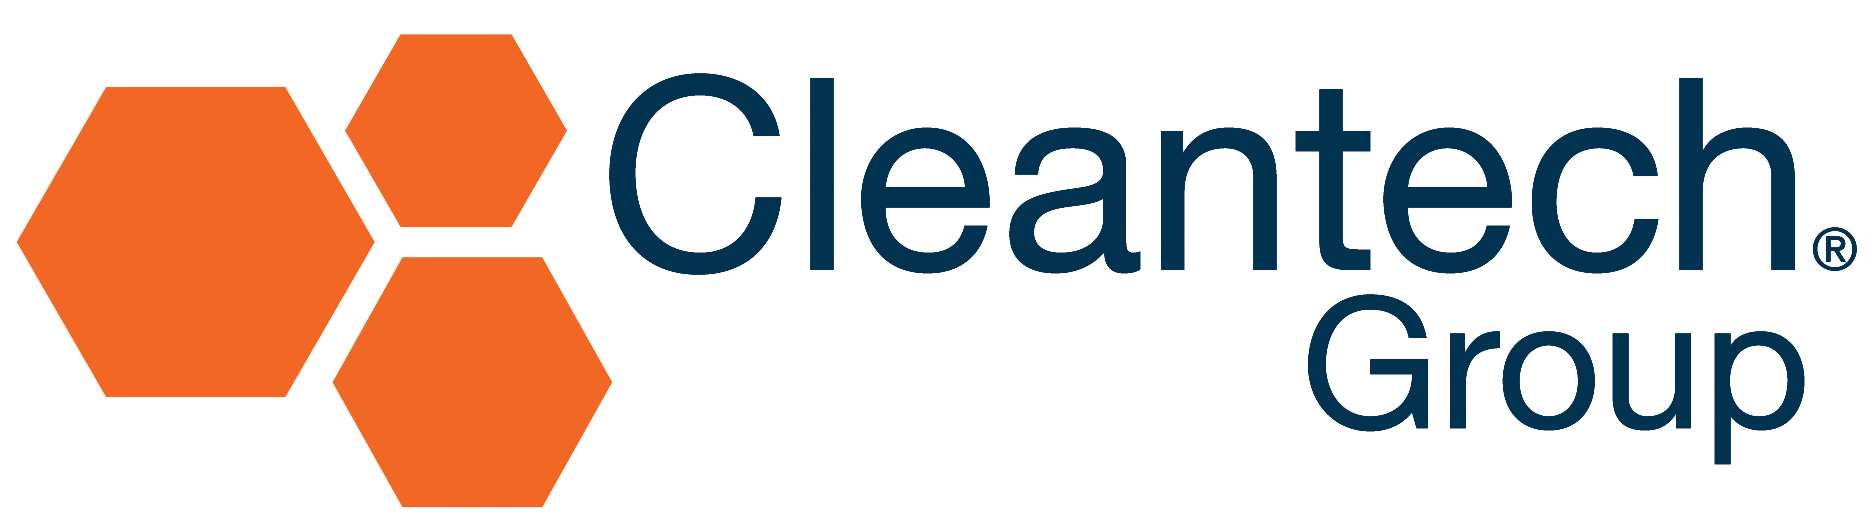 (c) Cleantech.com